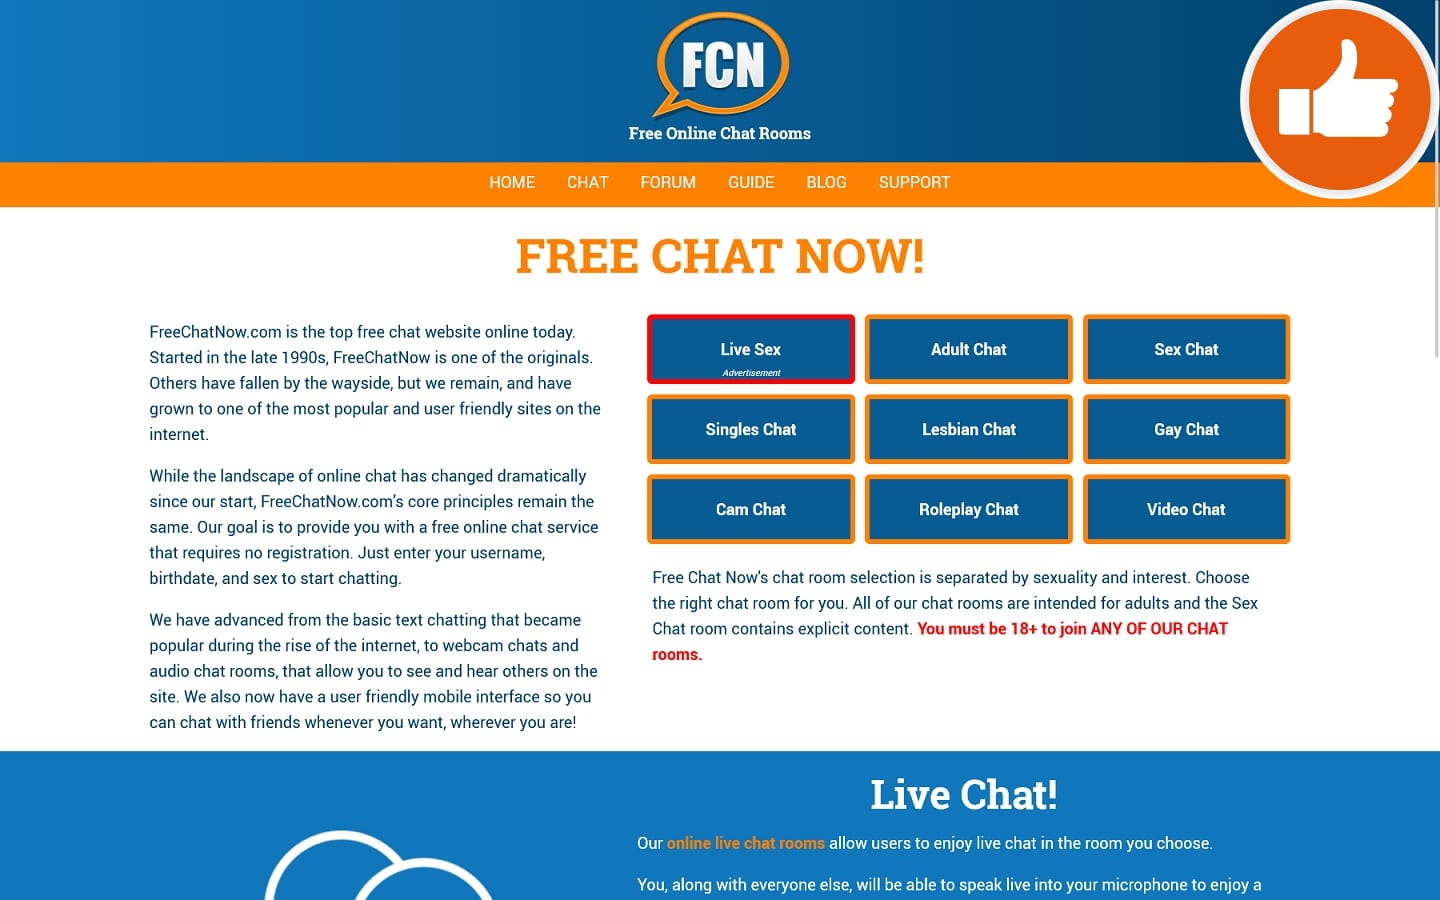 Review FreeChatNow.com scam experience